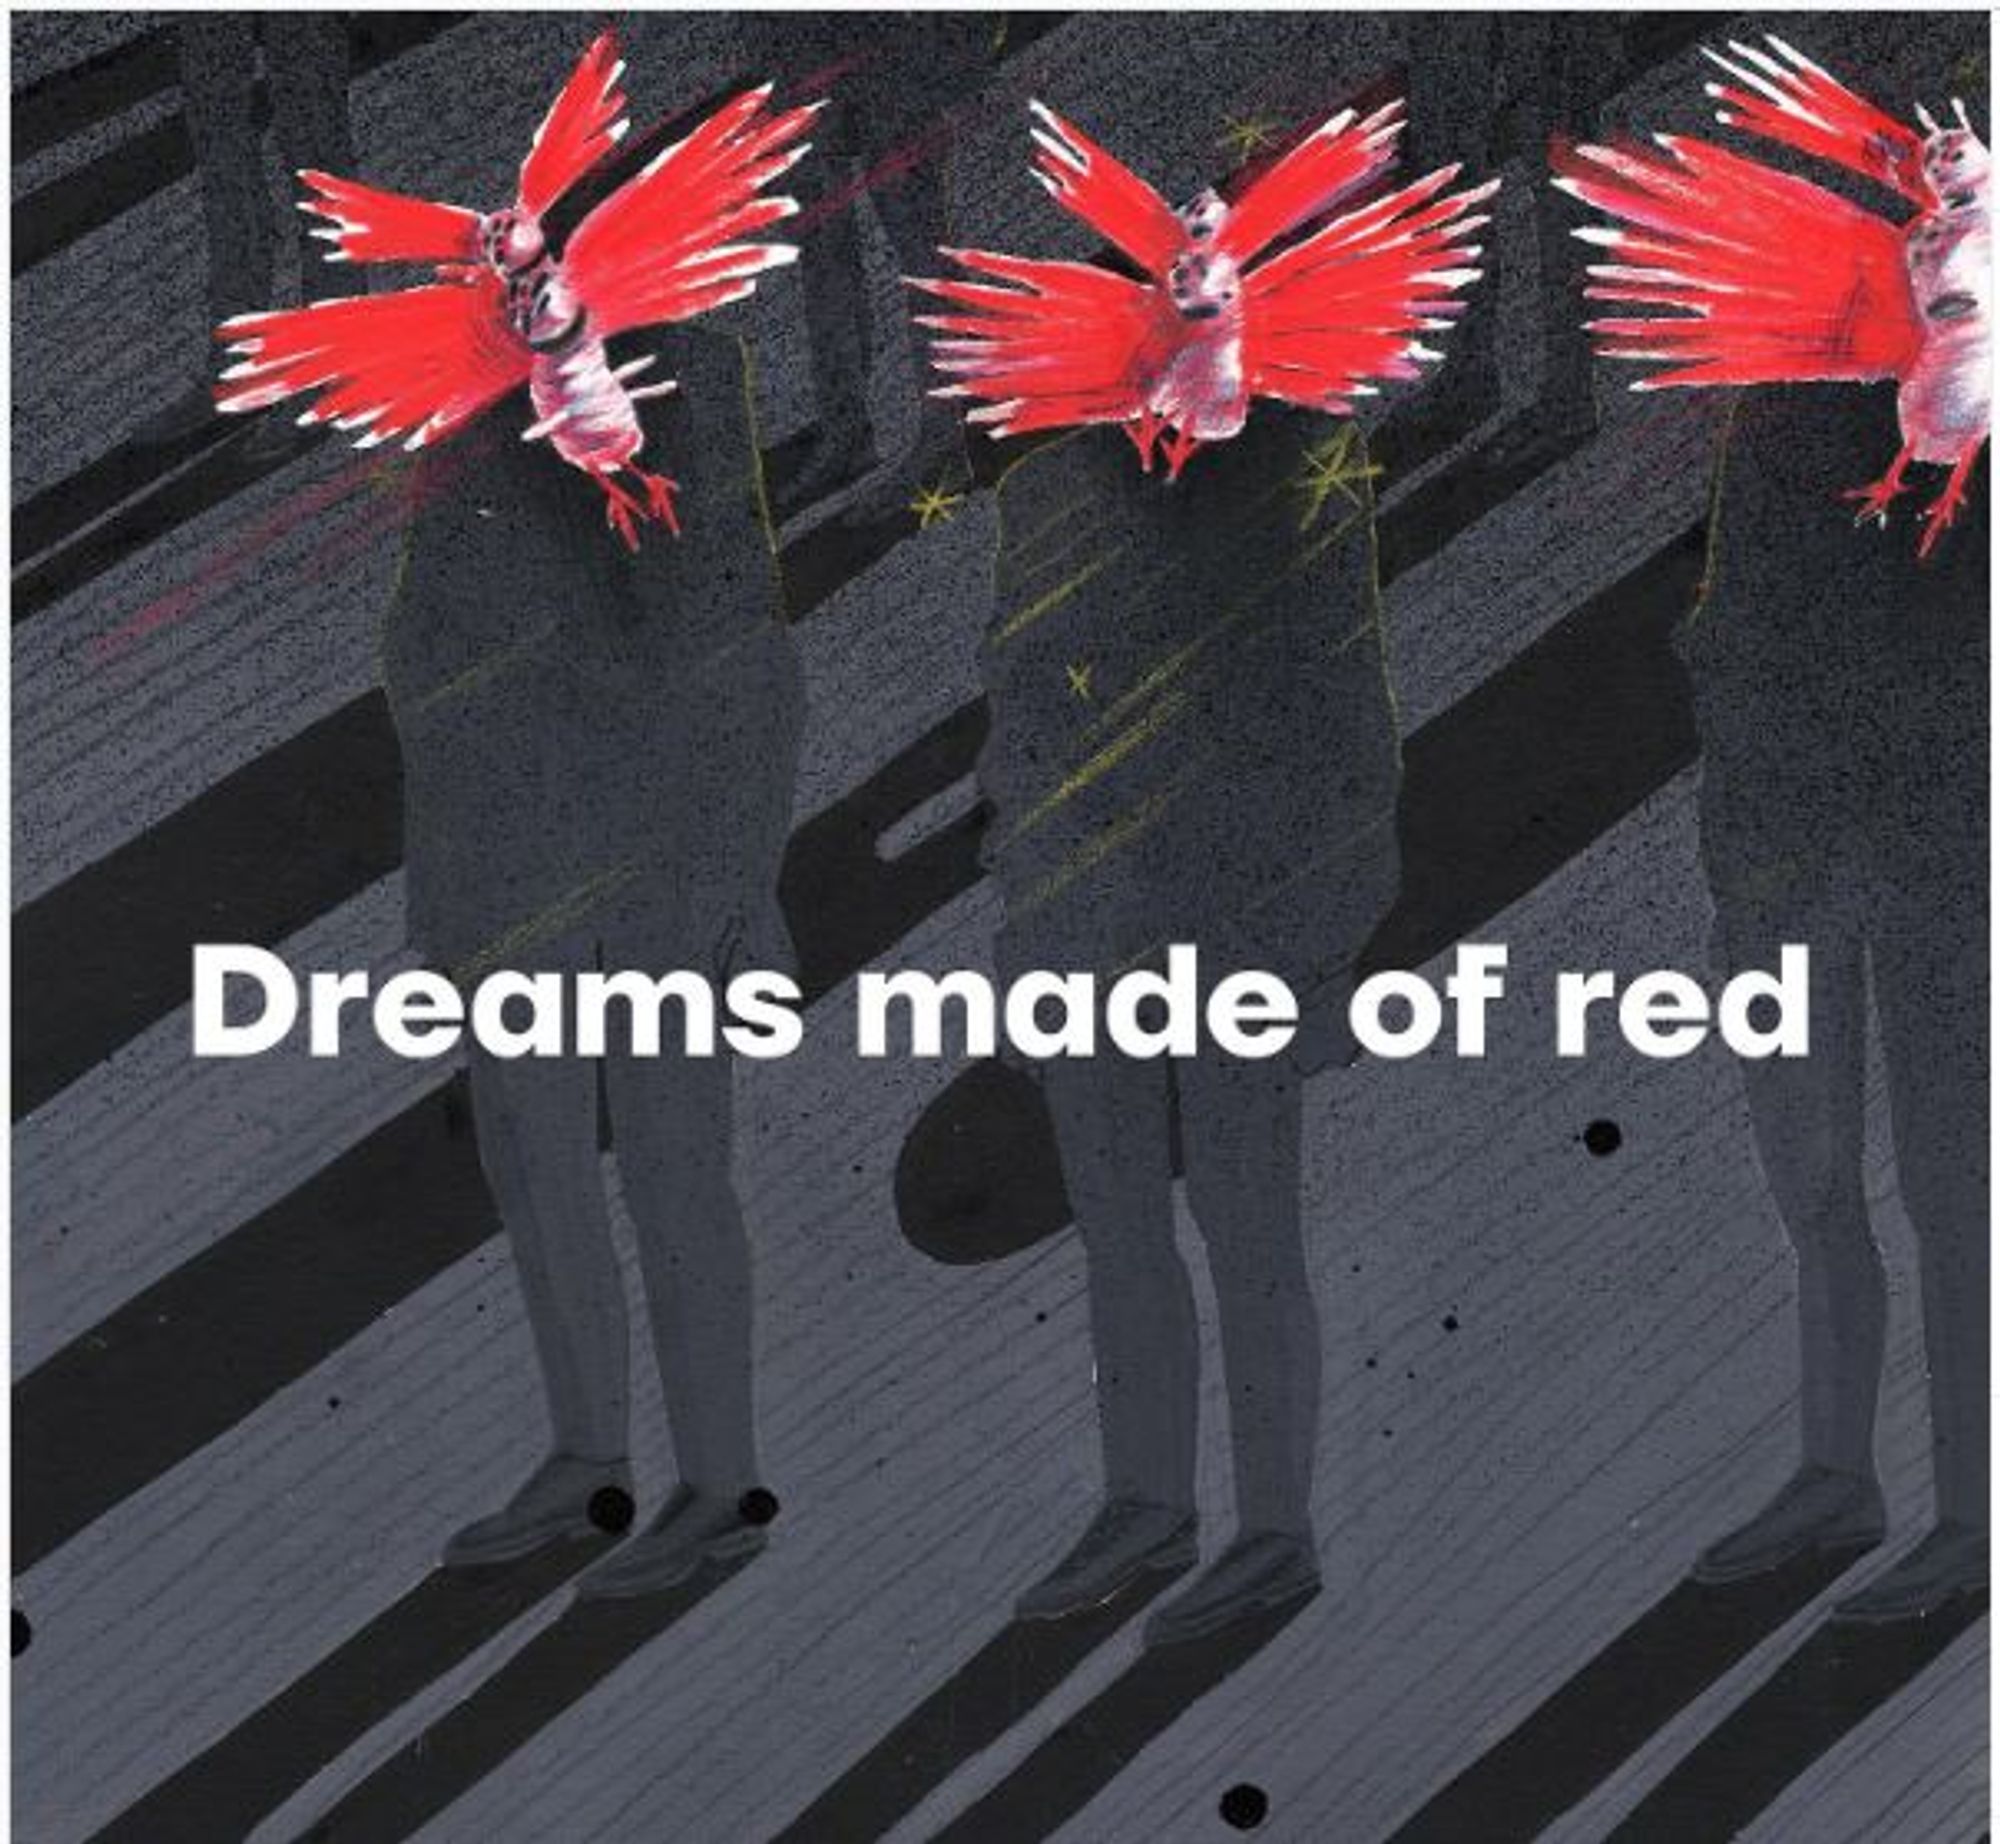 Lisowska retratou seu pesadelo em série intitulada “Sonhos Feito de Vermelho”.